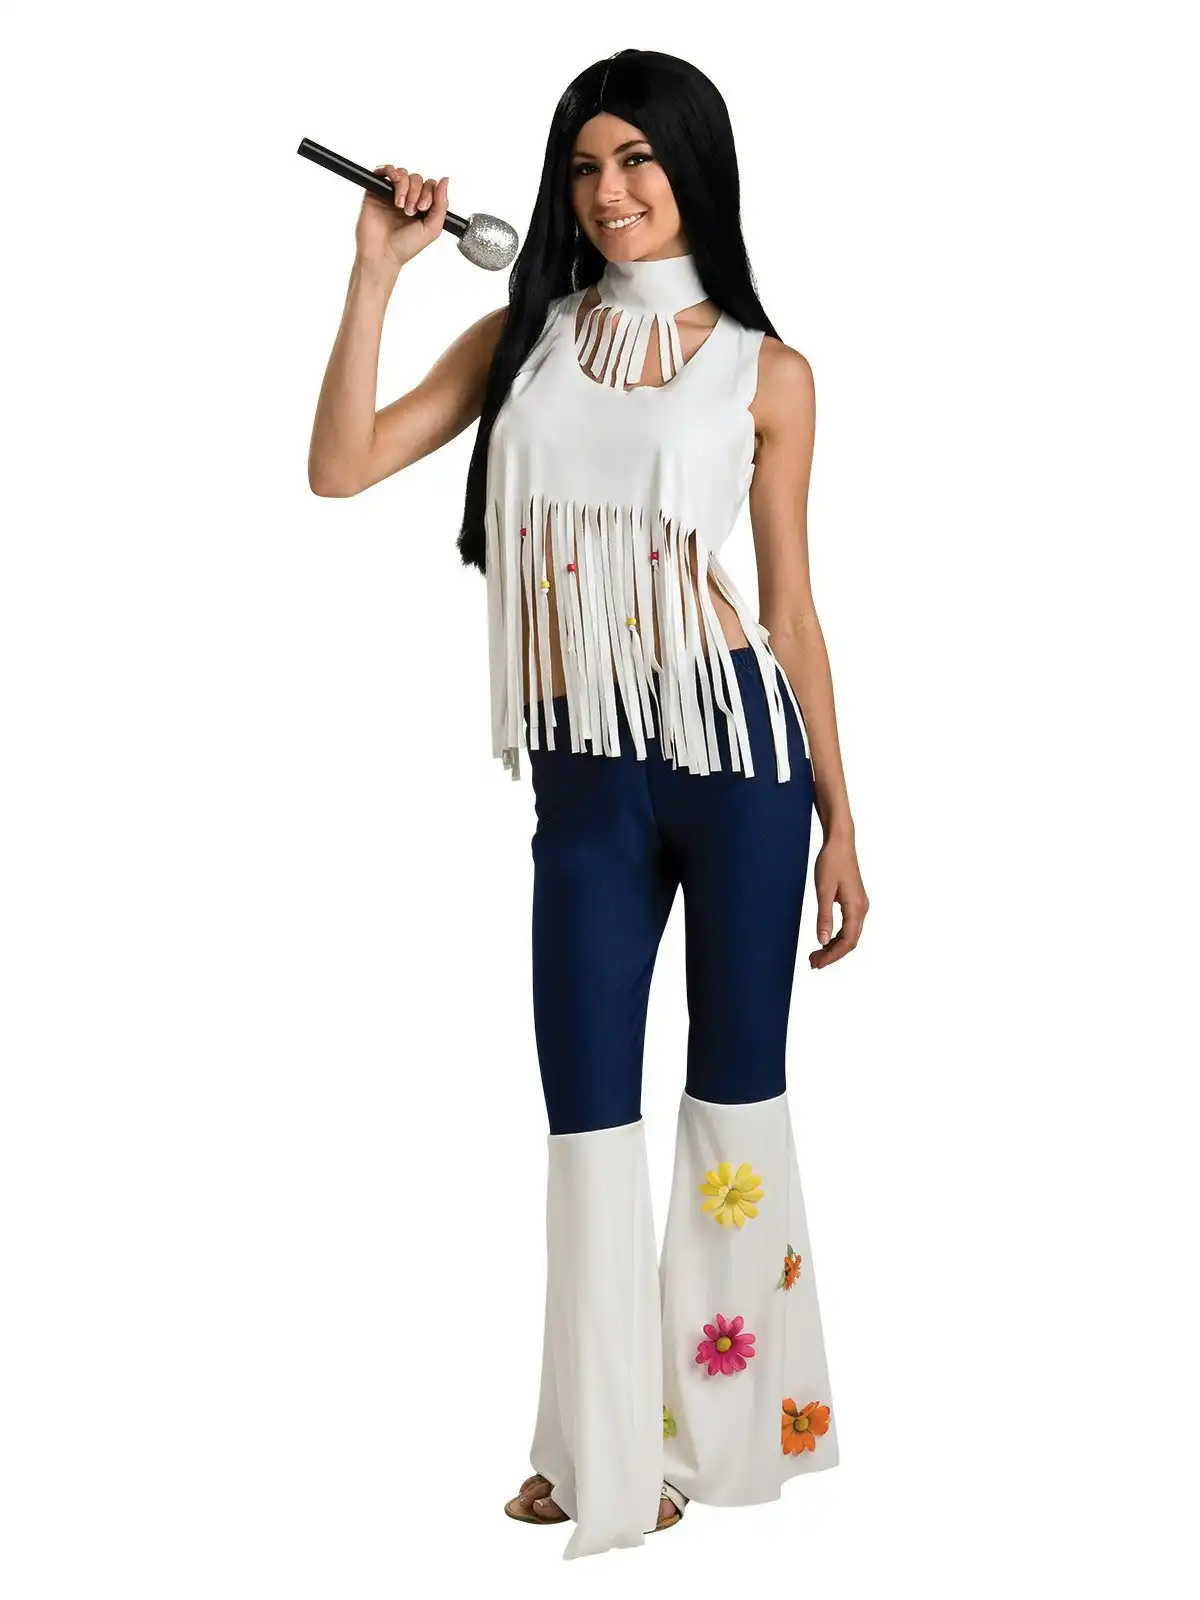 Rubies Rockstar Floral Music Hippies Gal Dress Up Women Costume Size Standard